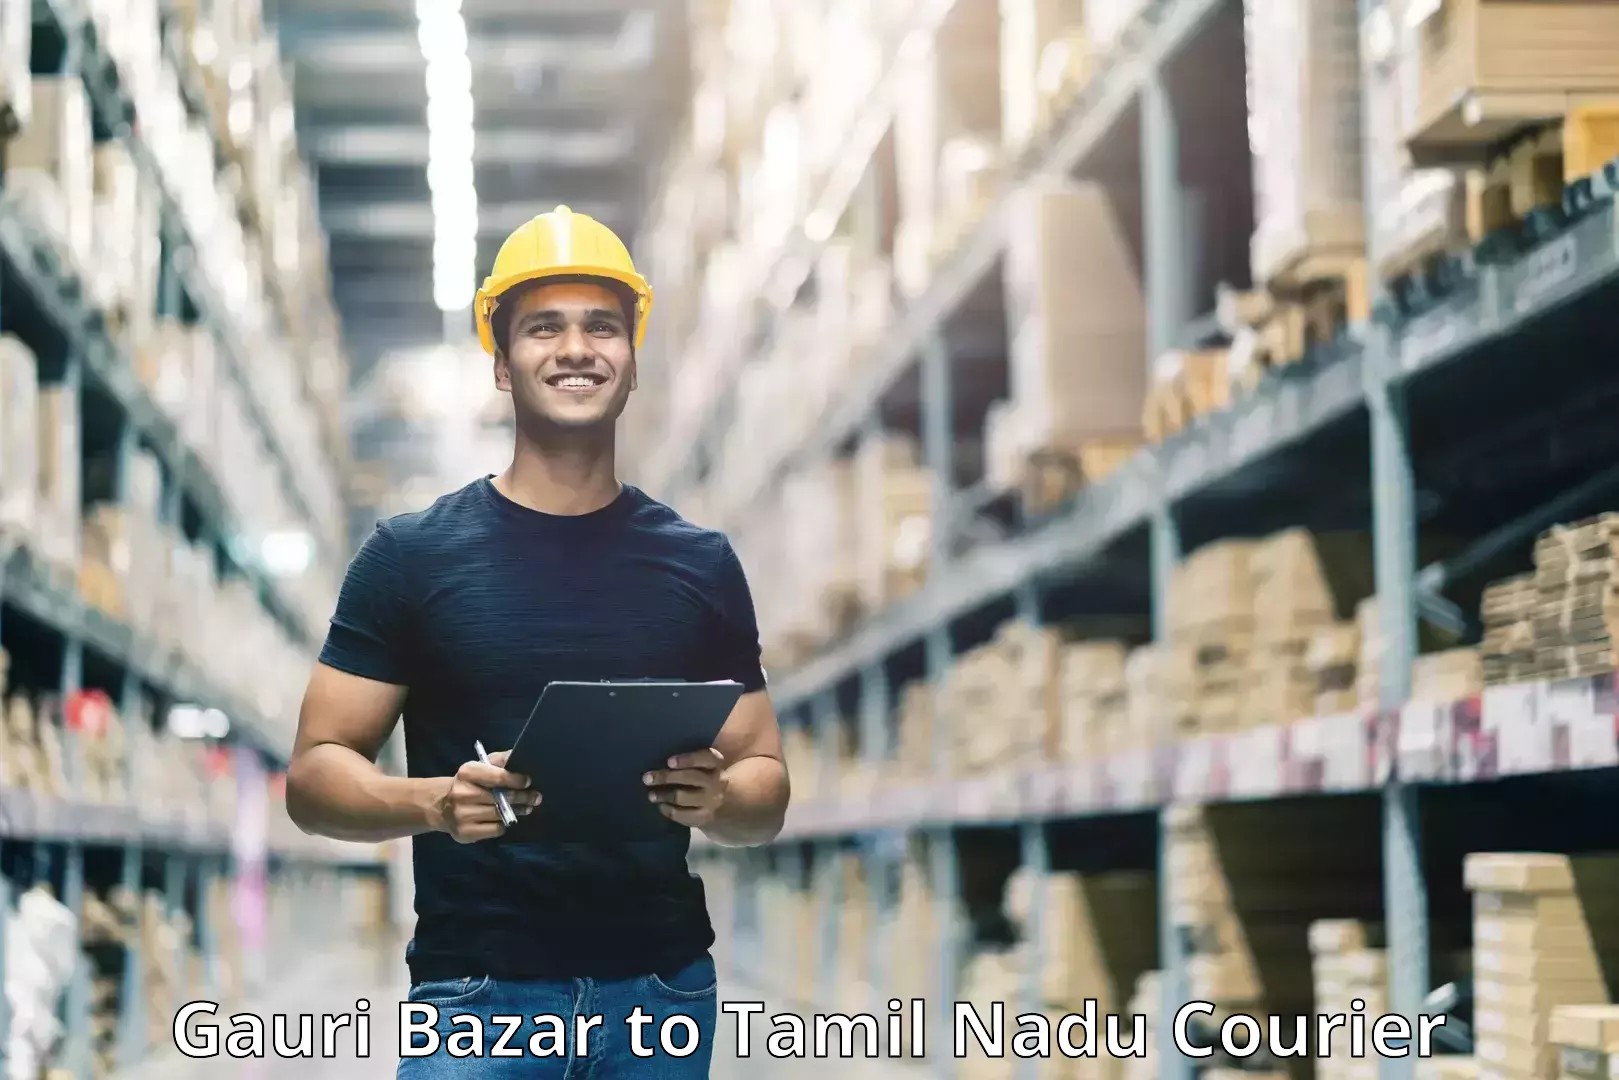 Efficient freight service Gauri Bazar to Sirkazhi